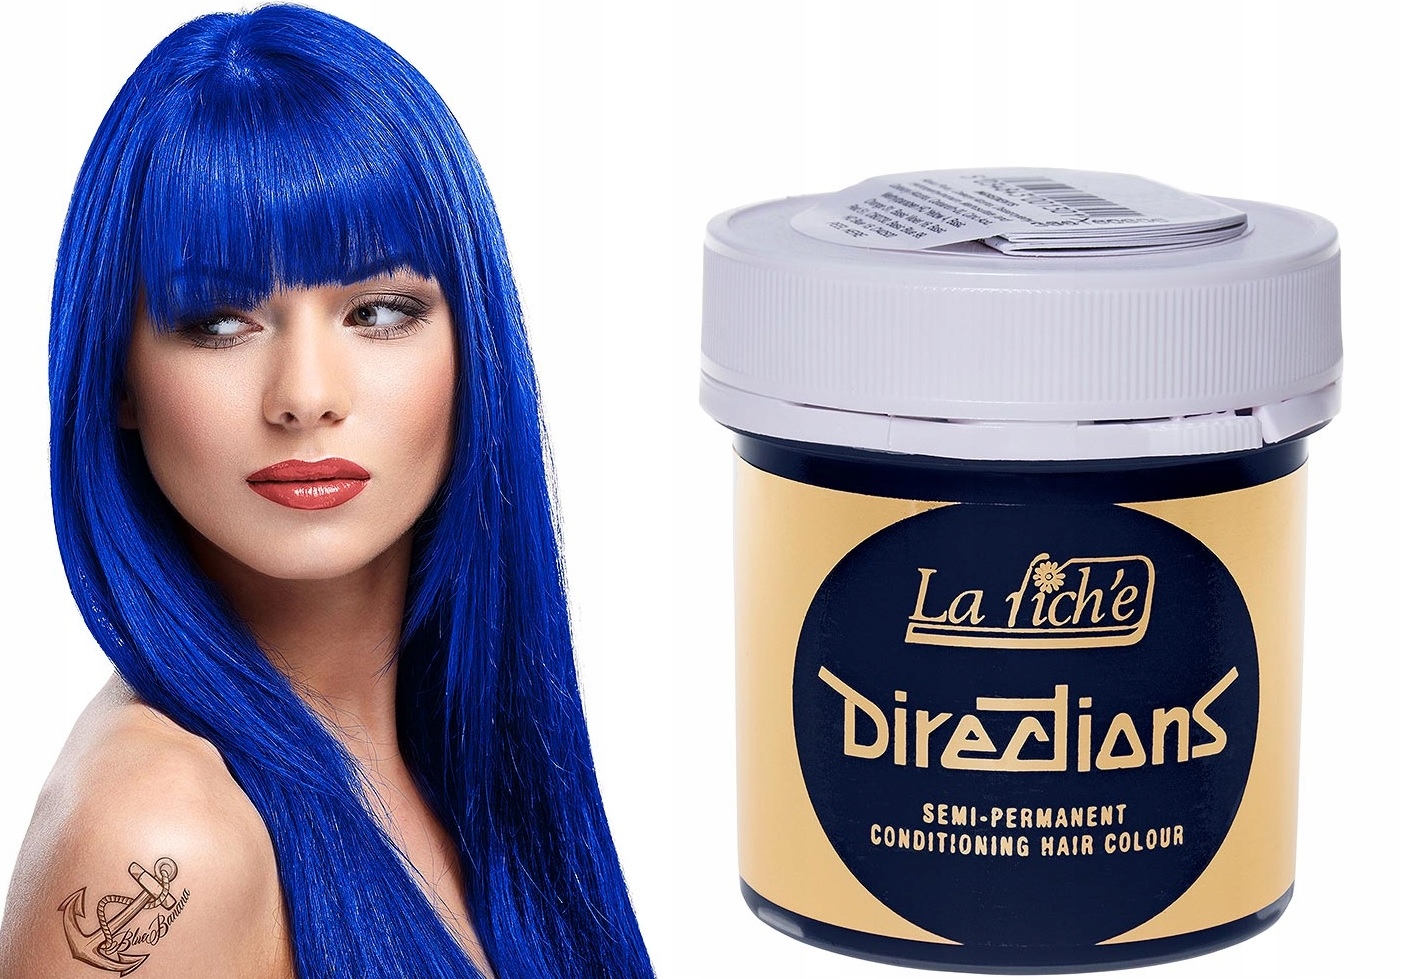 La Riche Directions Semi-Permanent Hair Color - Midnight Blue - wide 4